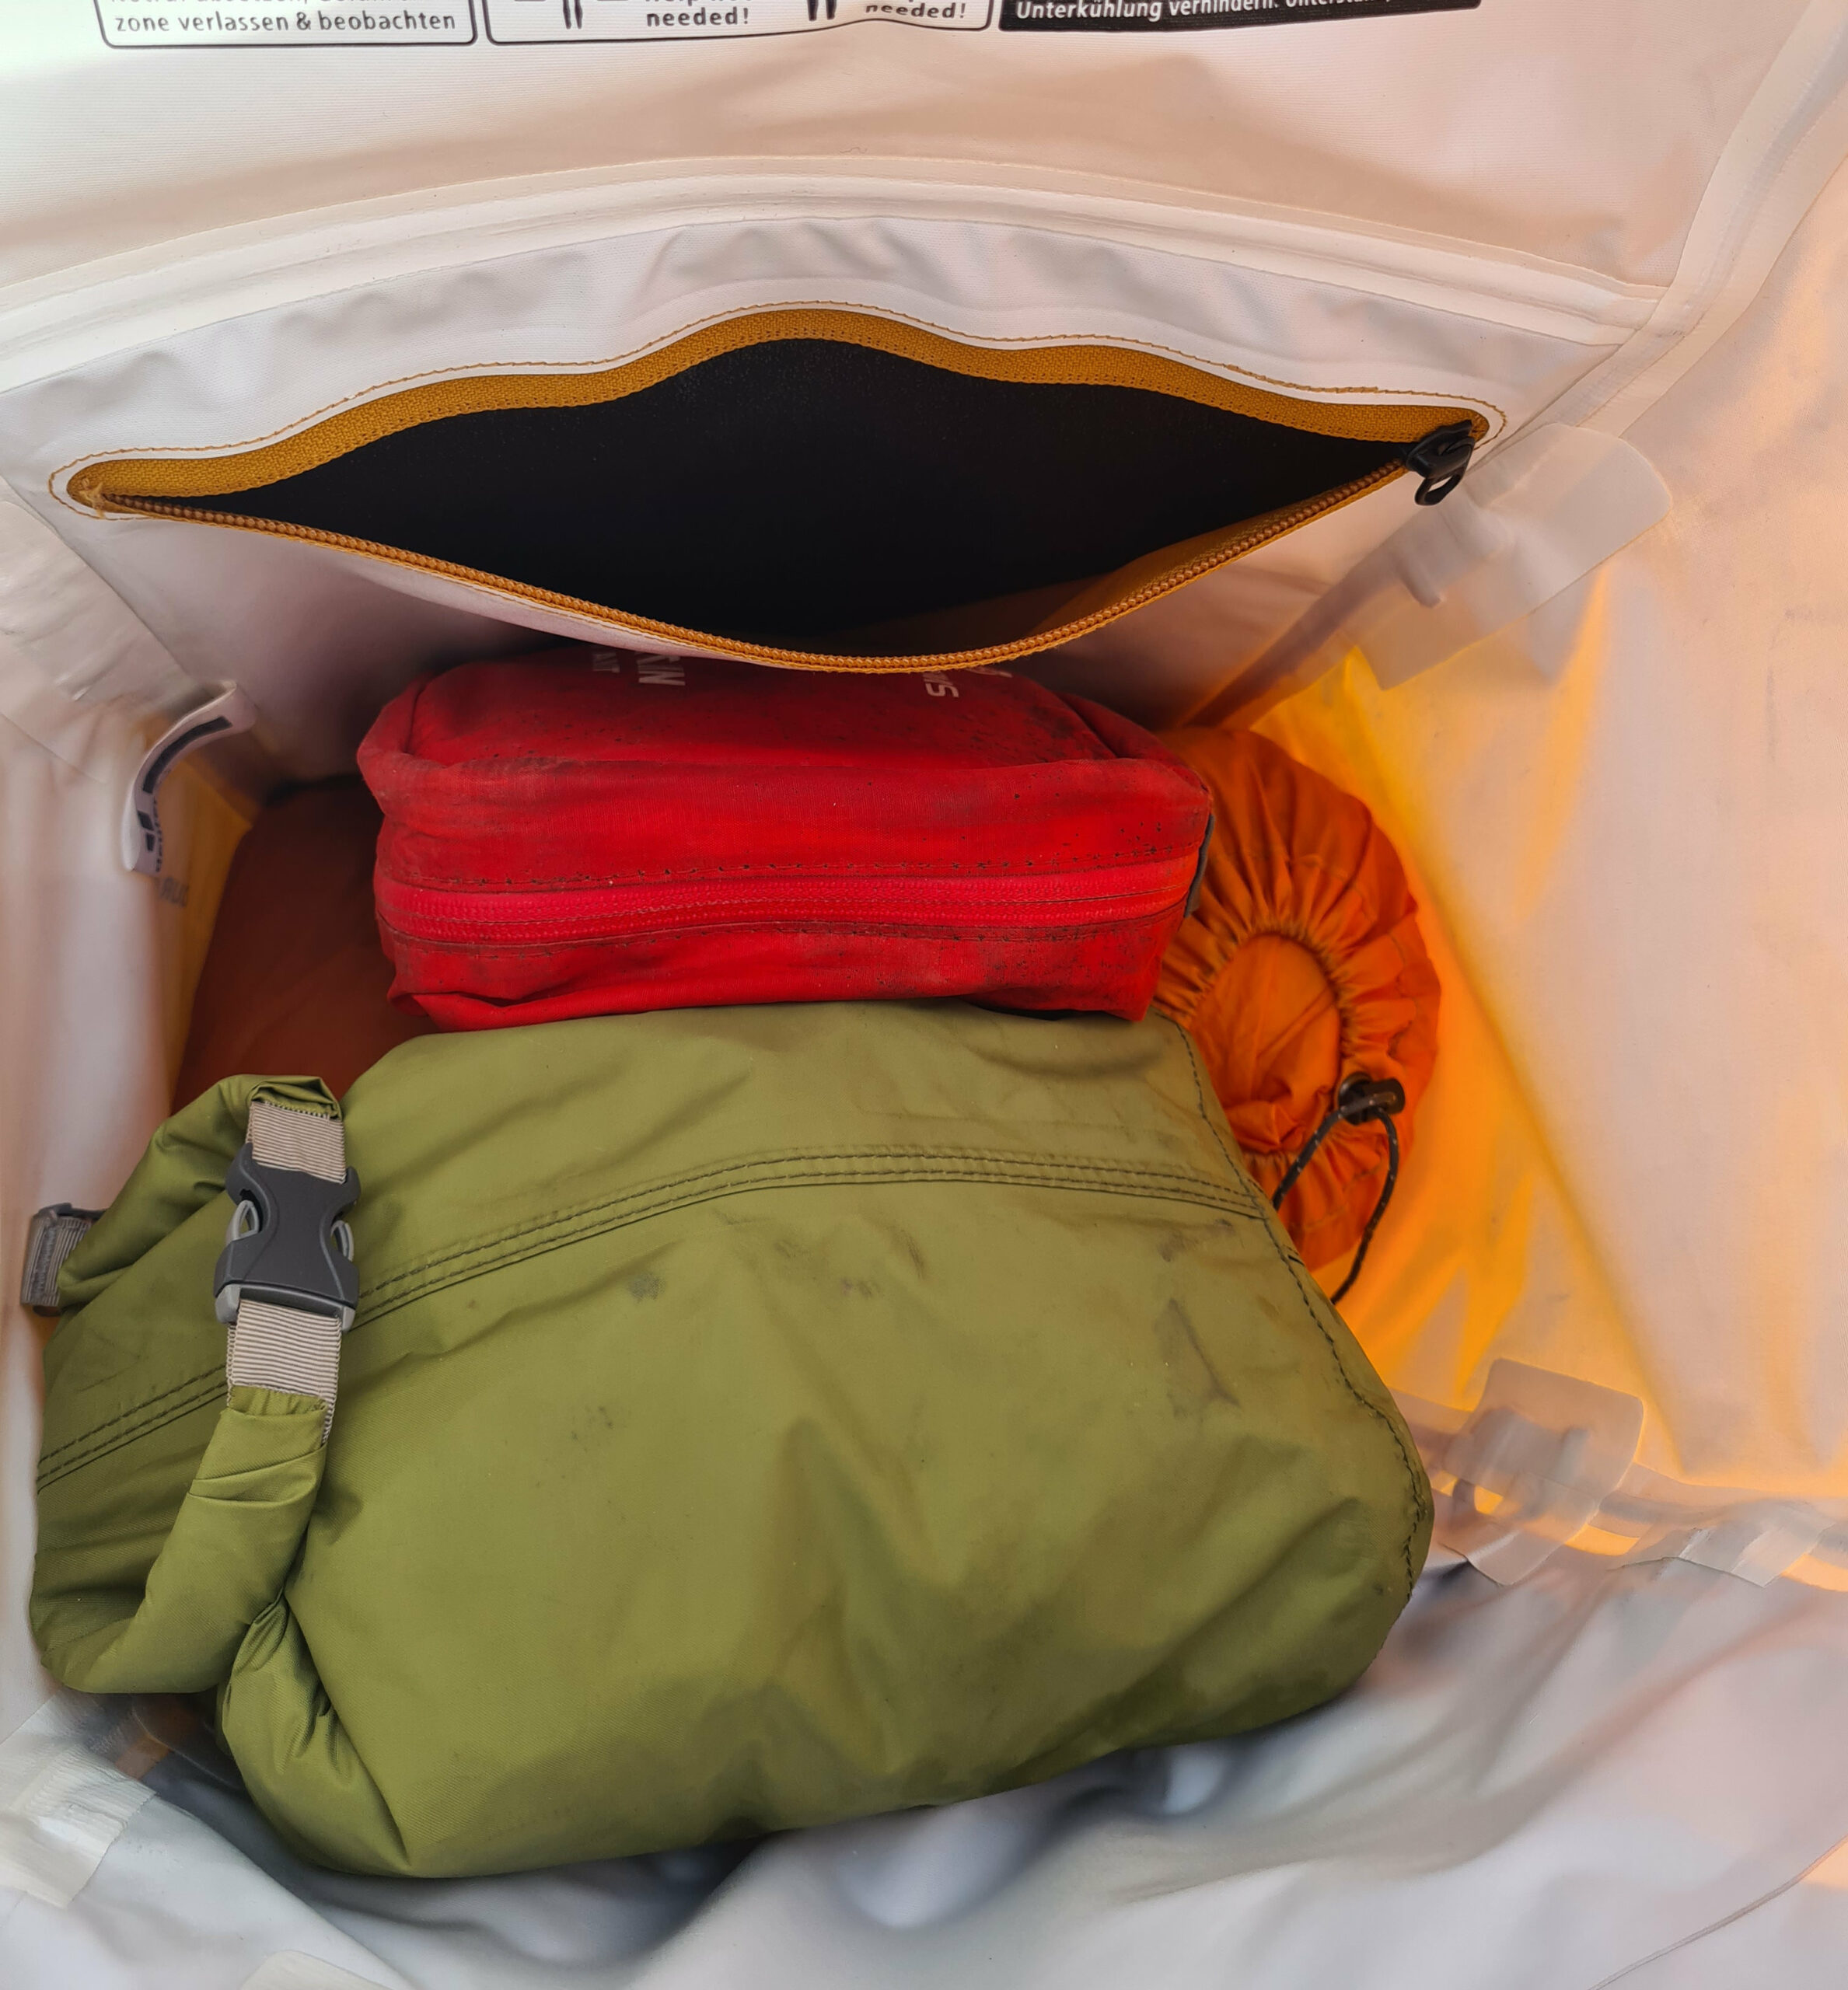 Inside backpack